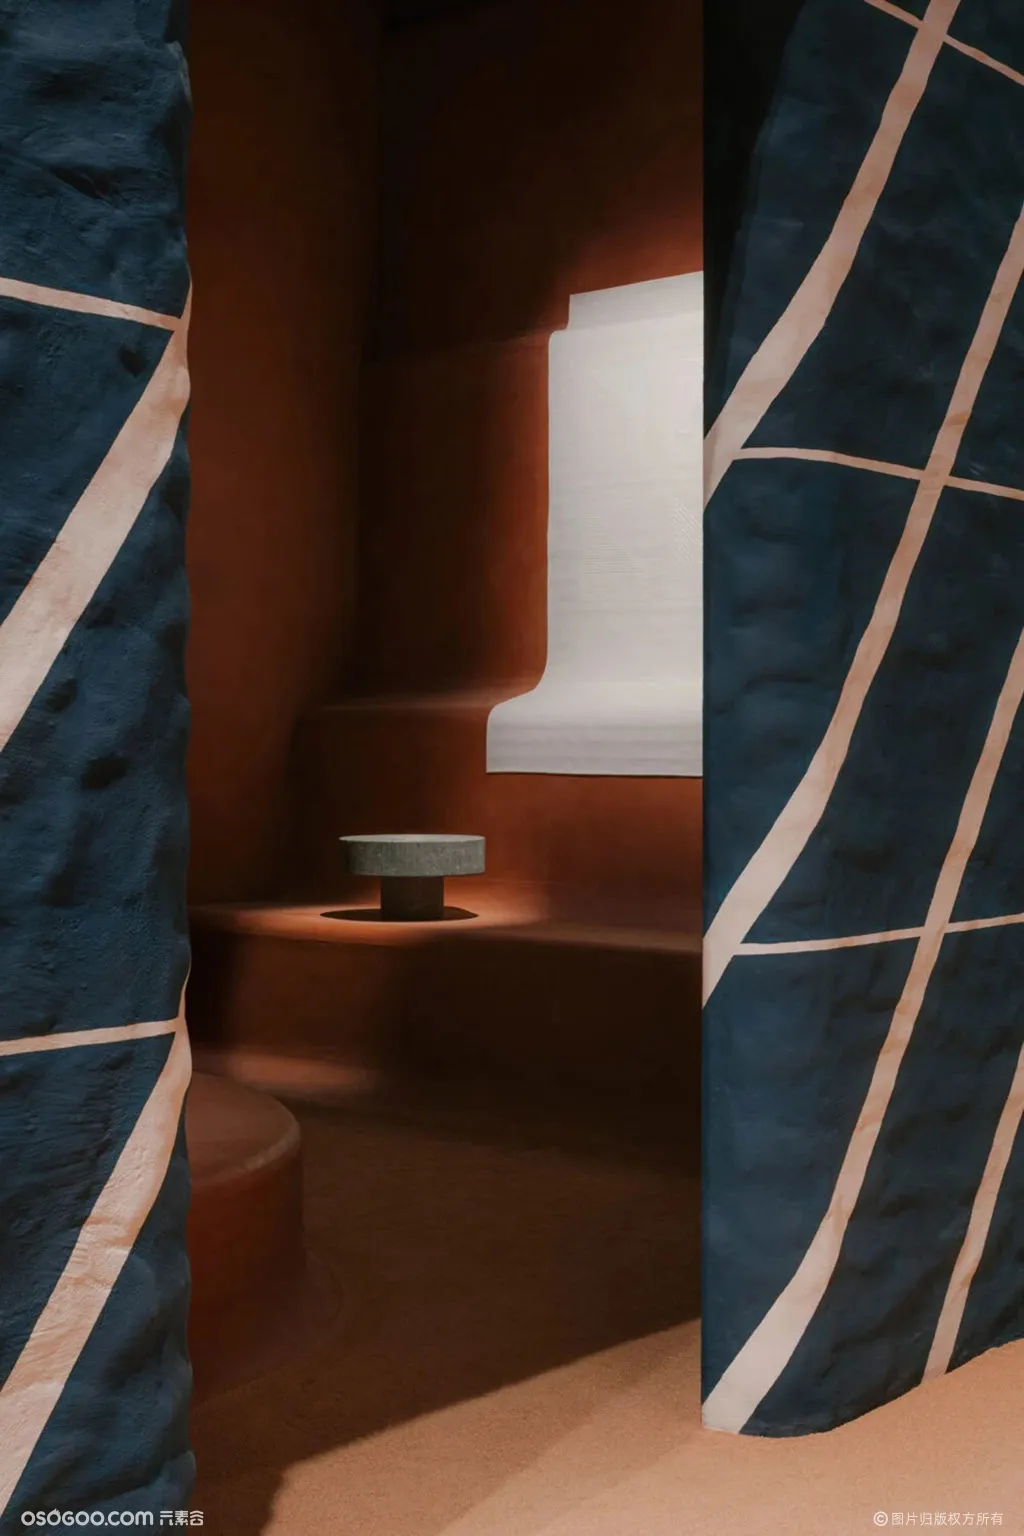 爱马仕在 2021 年米兰设计周上展示“家居系列”